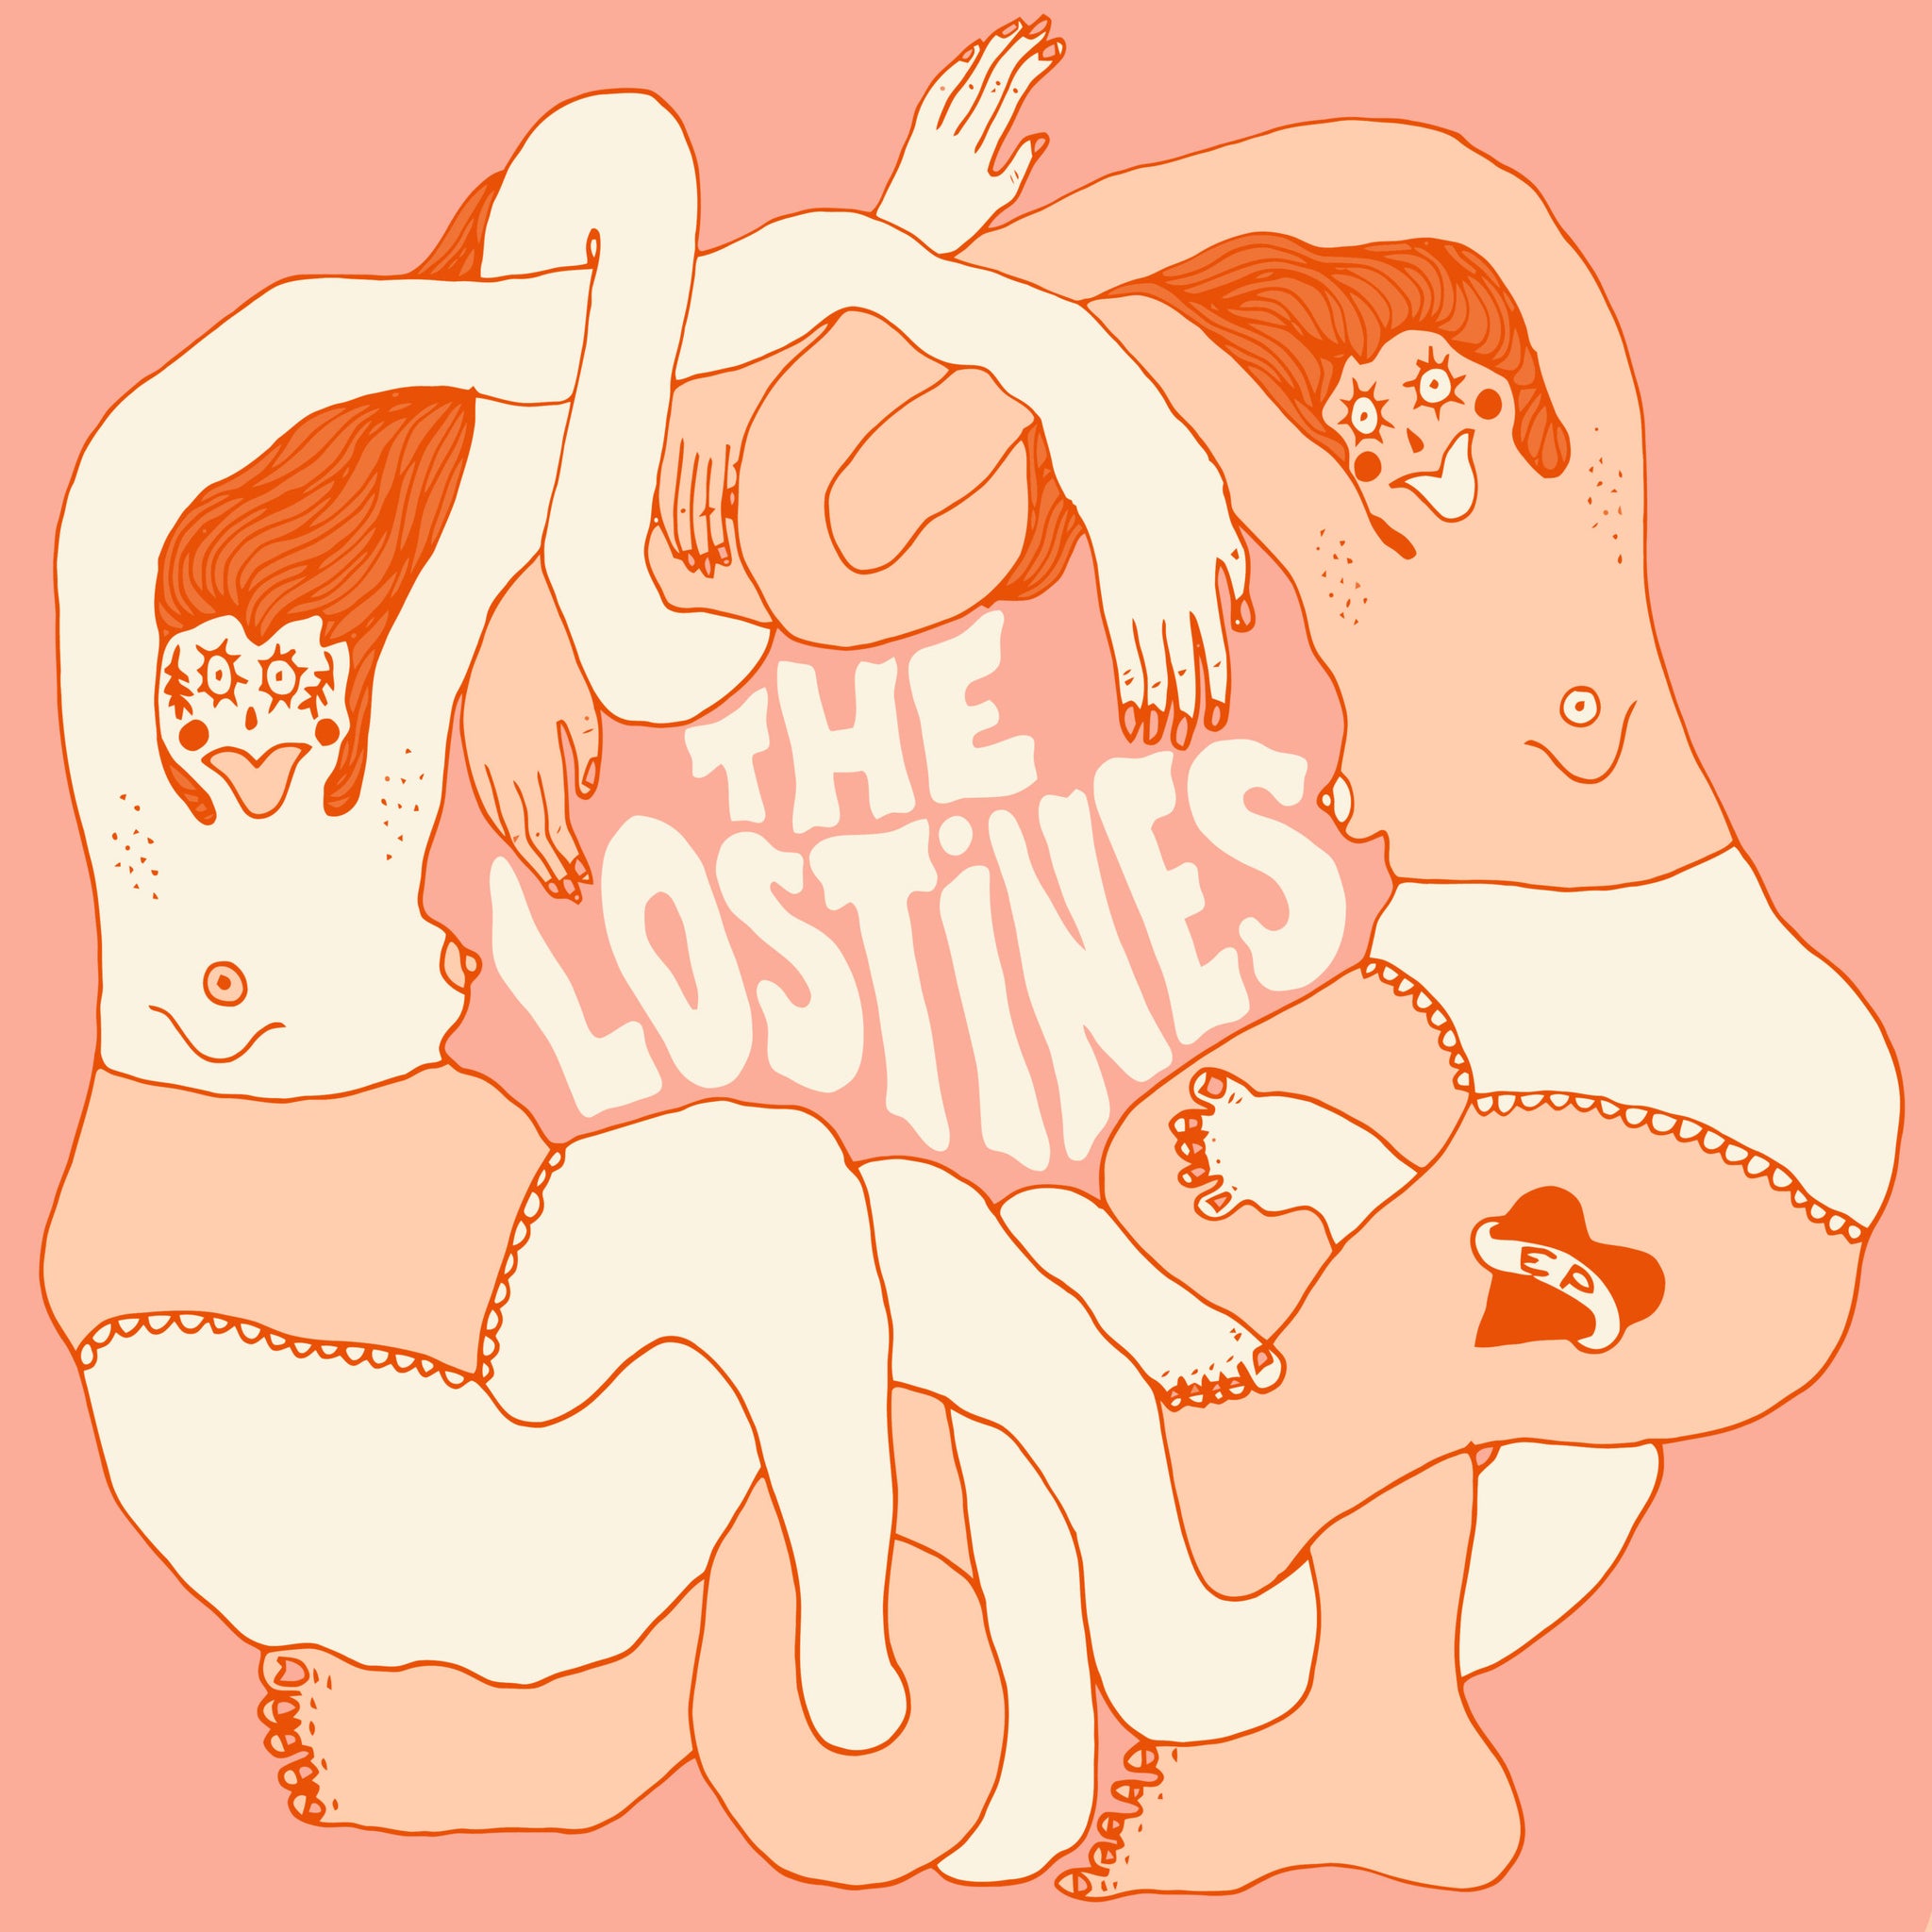 The Lostines - "The Lostines EP" Digital Download